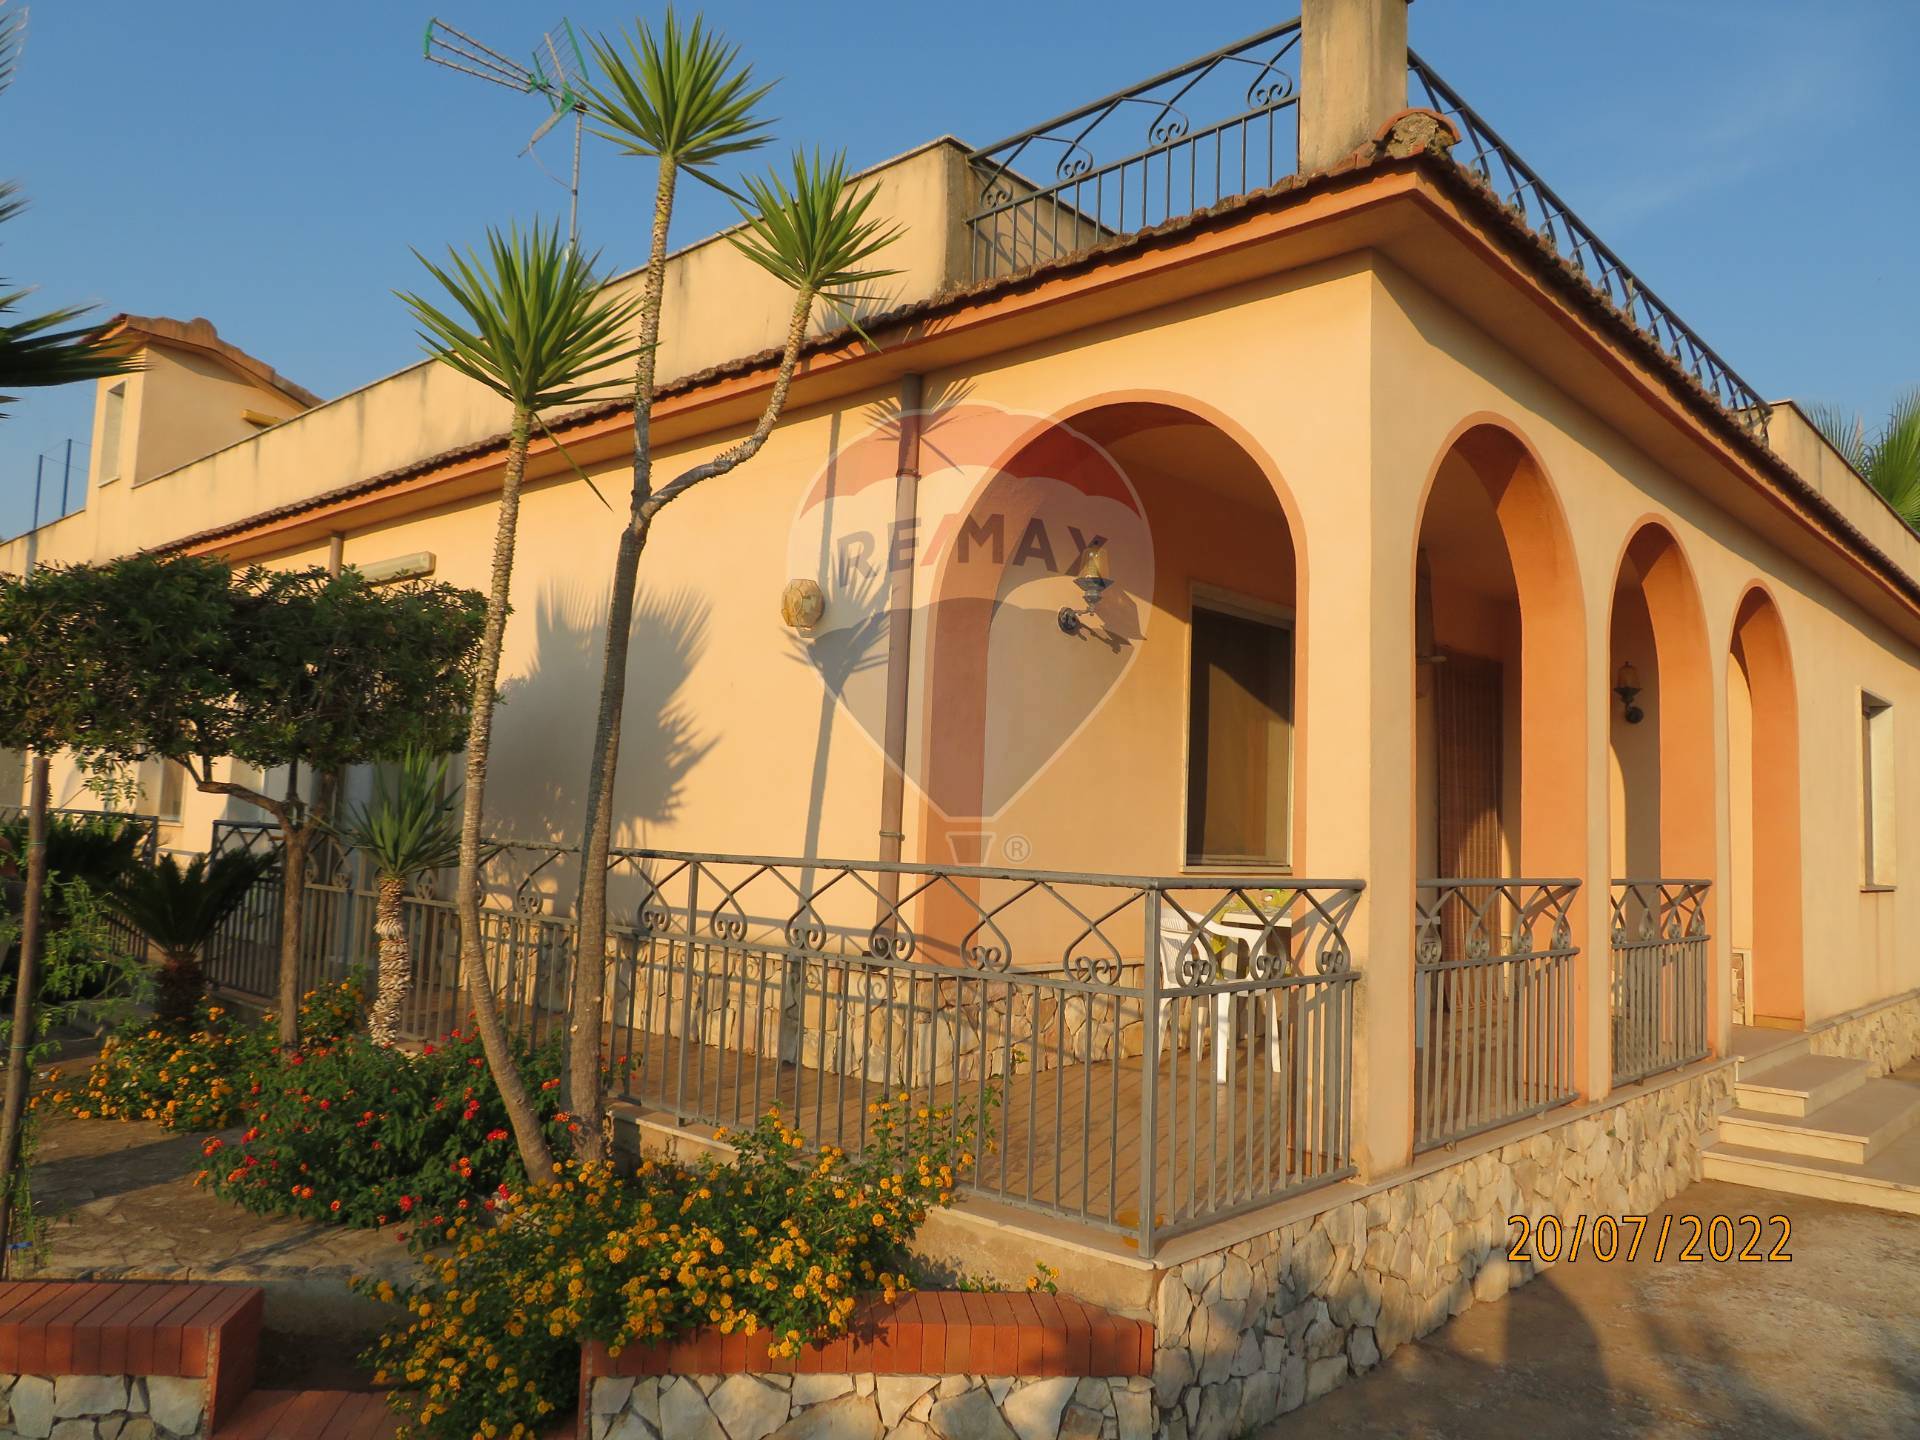 Villa in vendita a Chiaramonte Gulfi, 10 locali, prezzo € 350.000 | CambioCasa.it